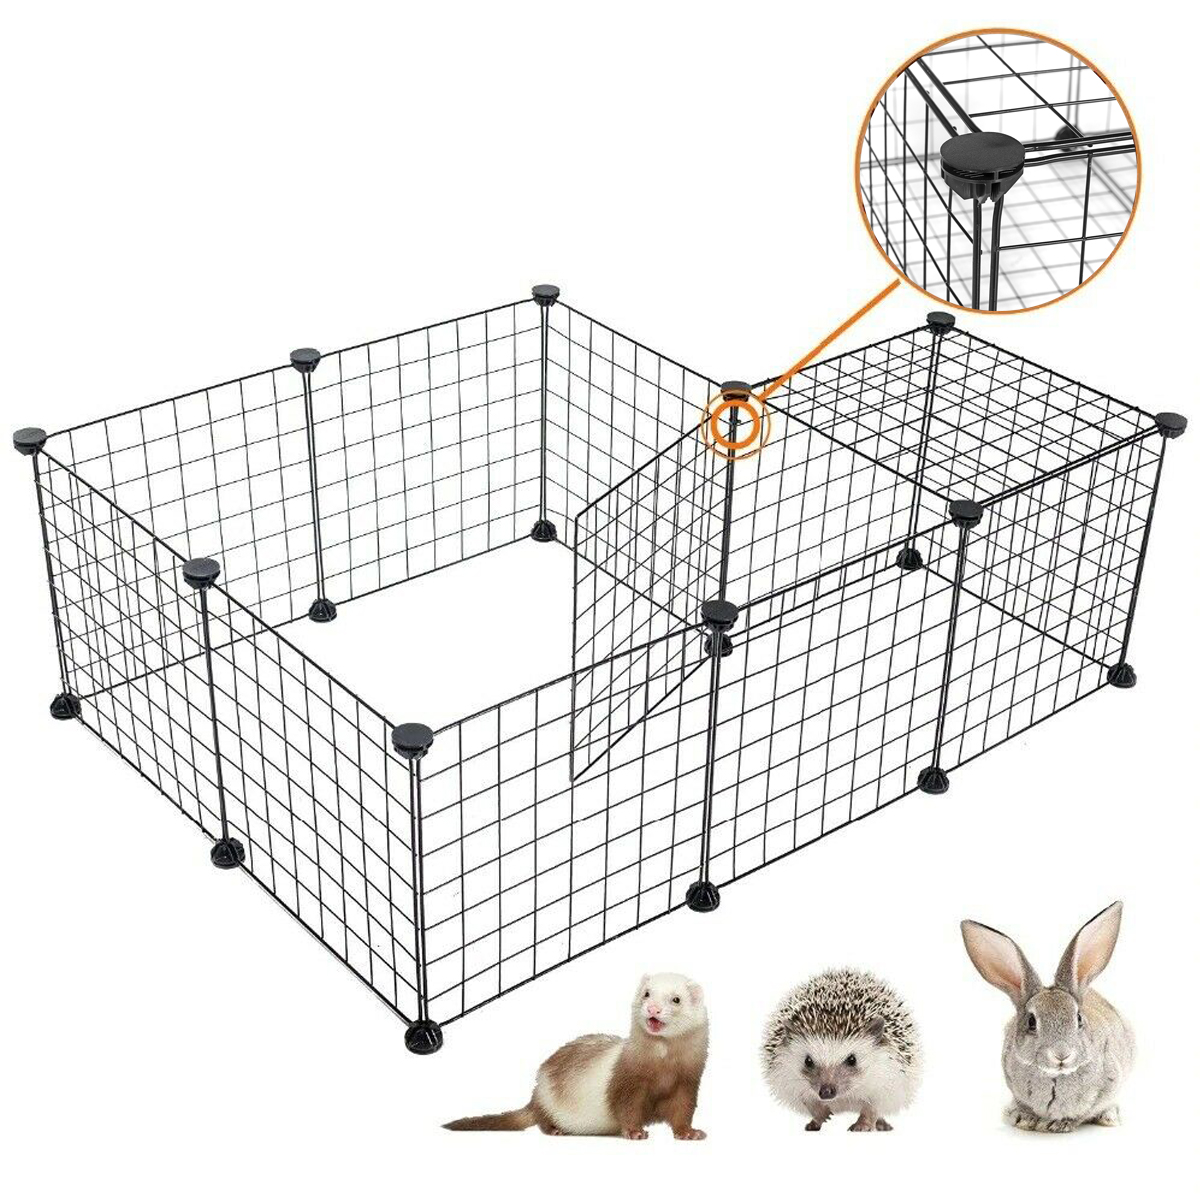 HGAUGE Freigehege Laufstall Verstellbares Laufgitter Welpenauslauf DIY Kleintiere Kaninchen Hasen Hamster und Meerschweinchen